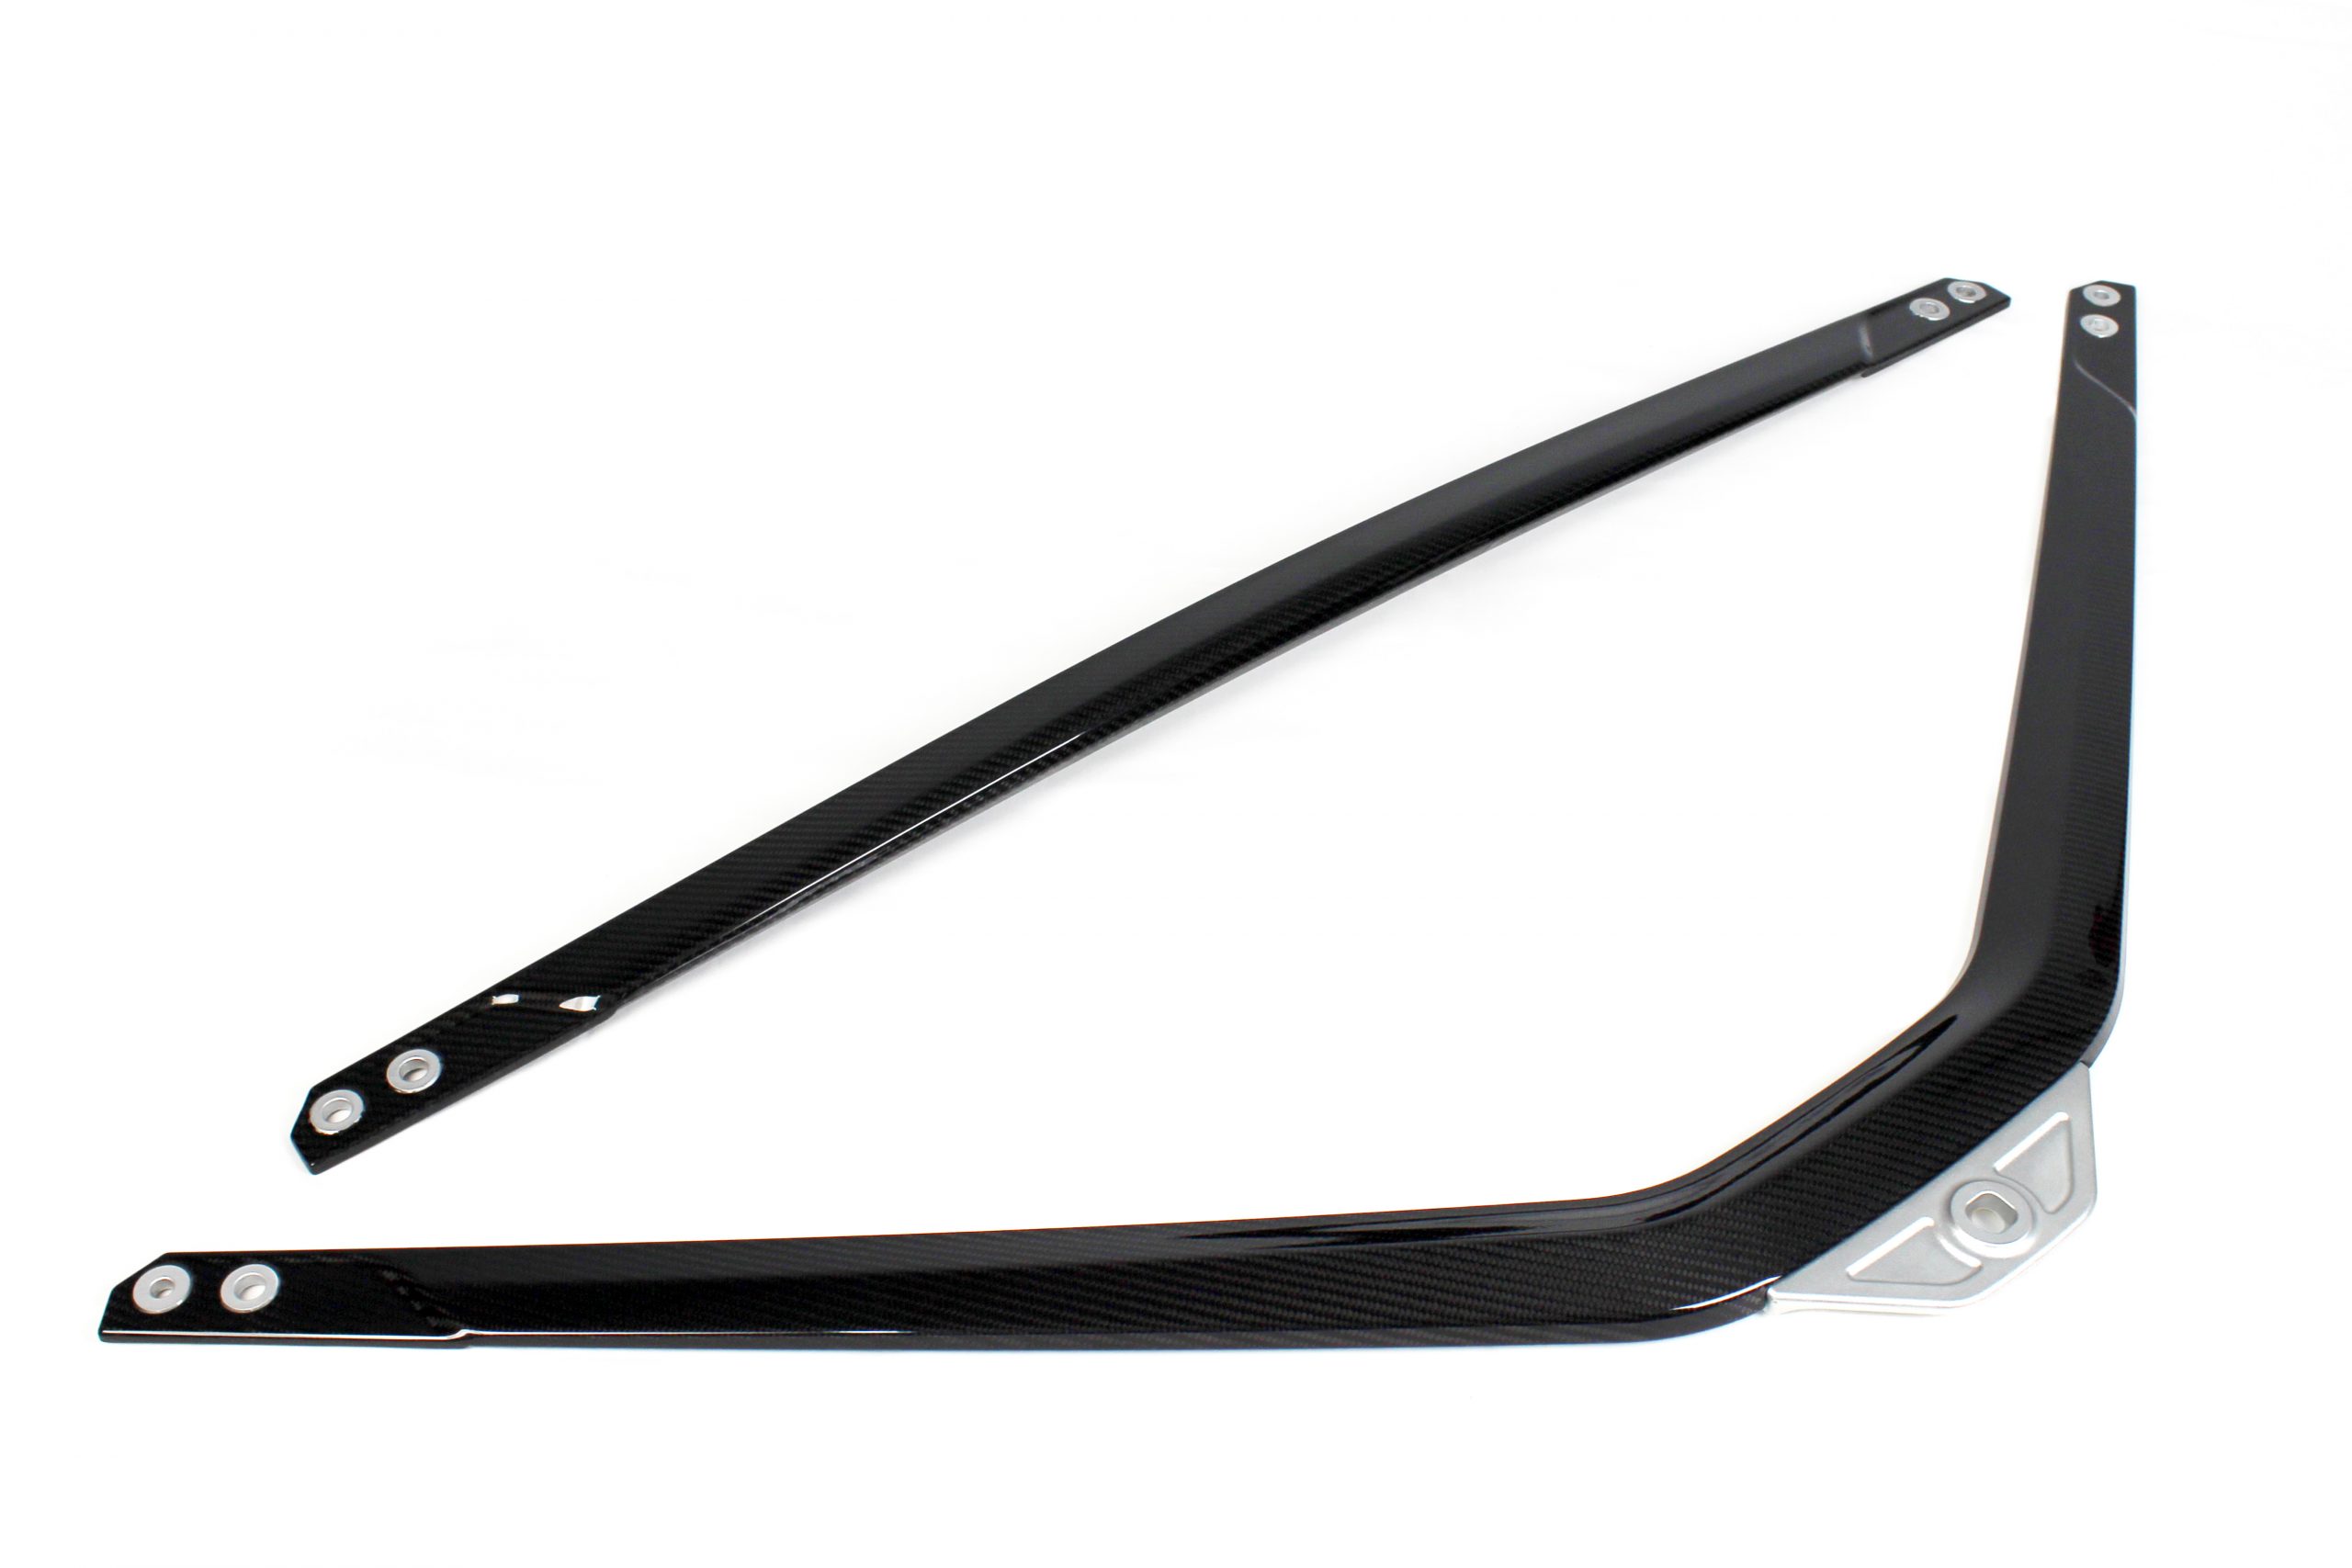 Karbonius Carbon Fibre Strut Brace for BMW G8X M2, M3 and M4